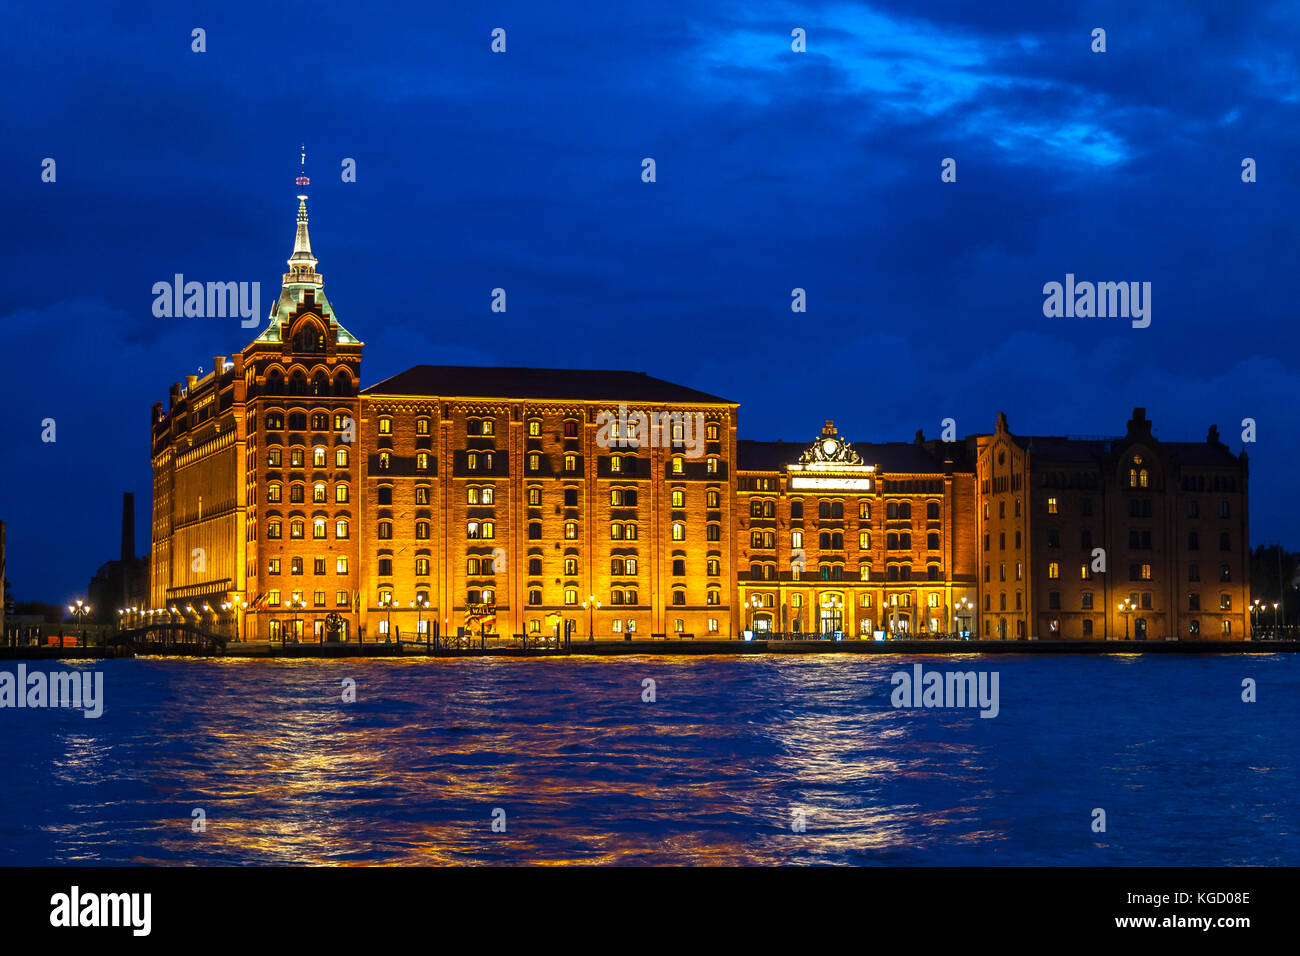 Hôtel Hilton Molino Stucky, Giudecca, Venise, Vénétie, Italie illuminé de blue hour vu sur le canal Giudecca sur une nuit de tempête Banque D'Images